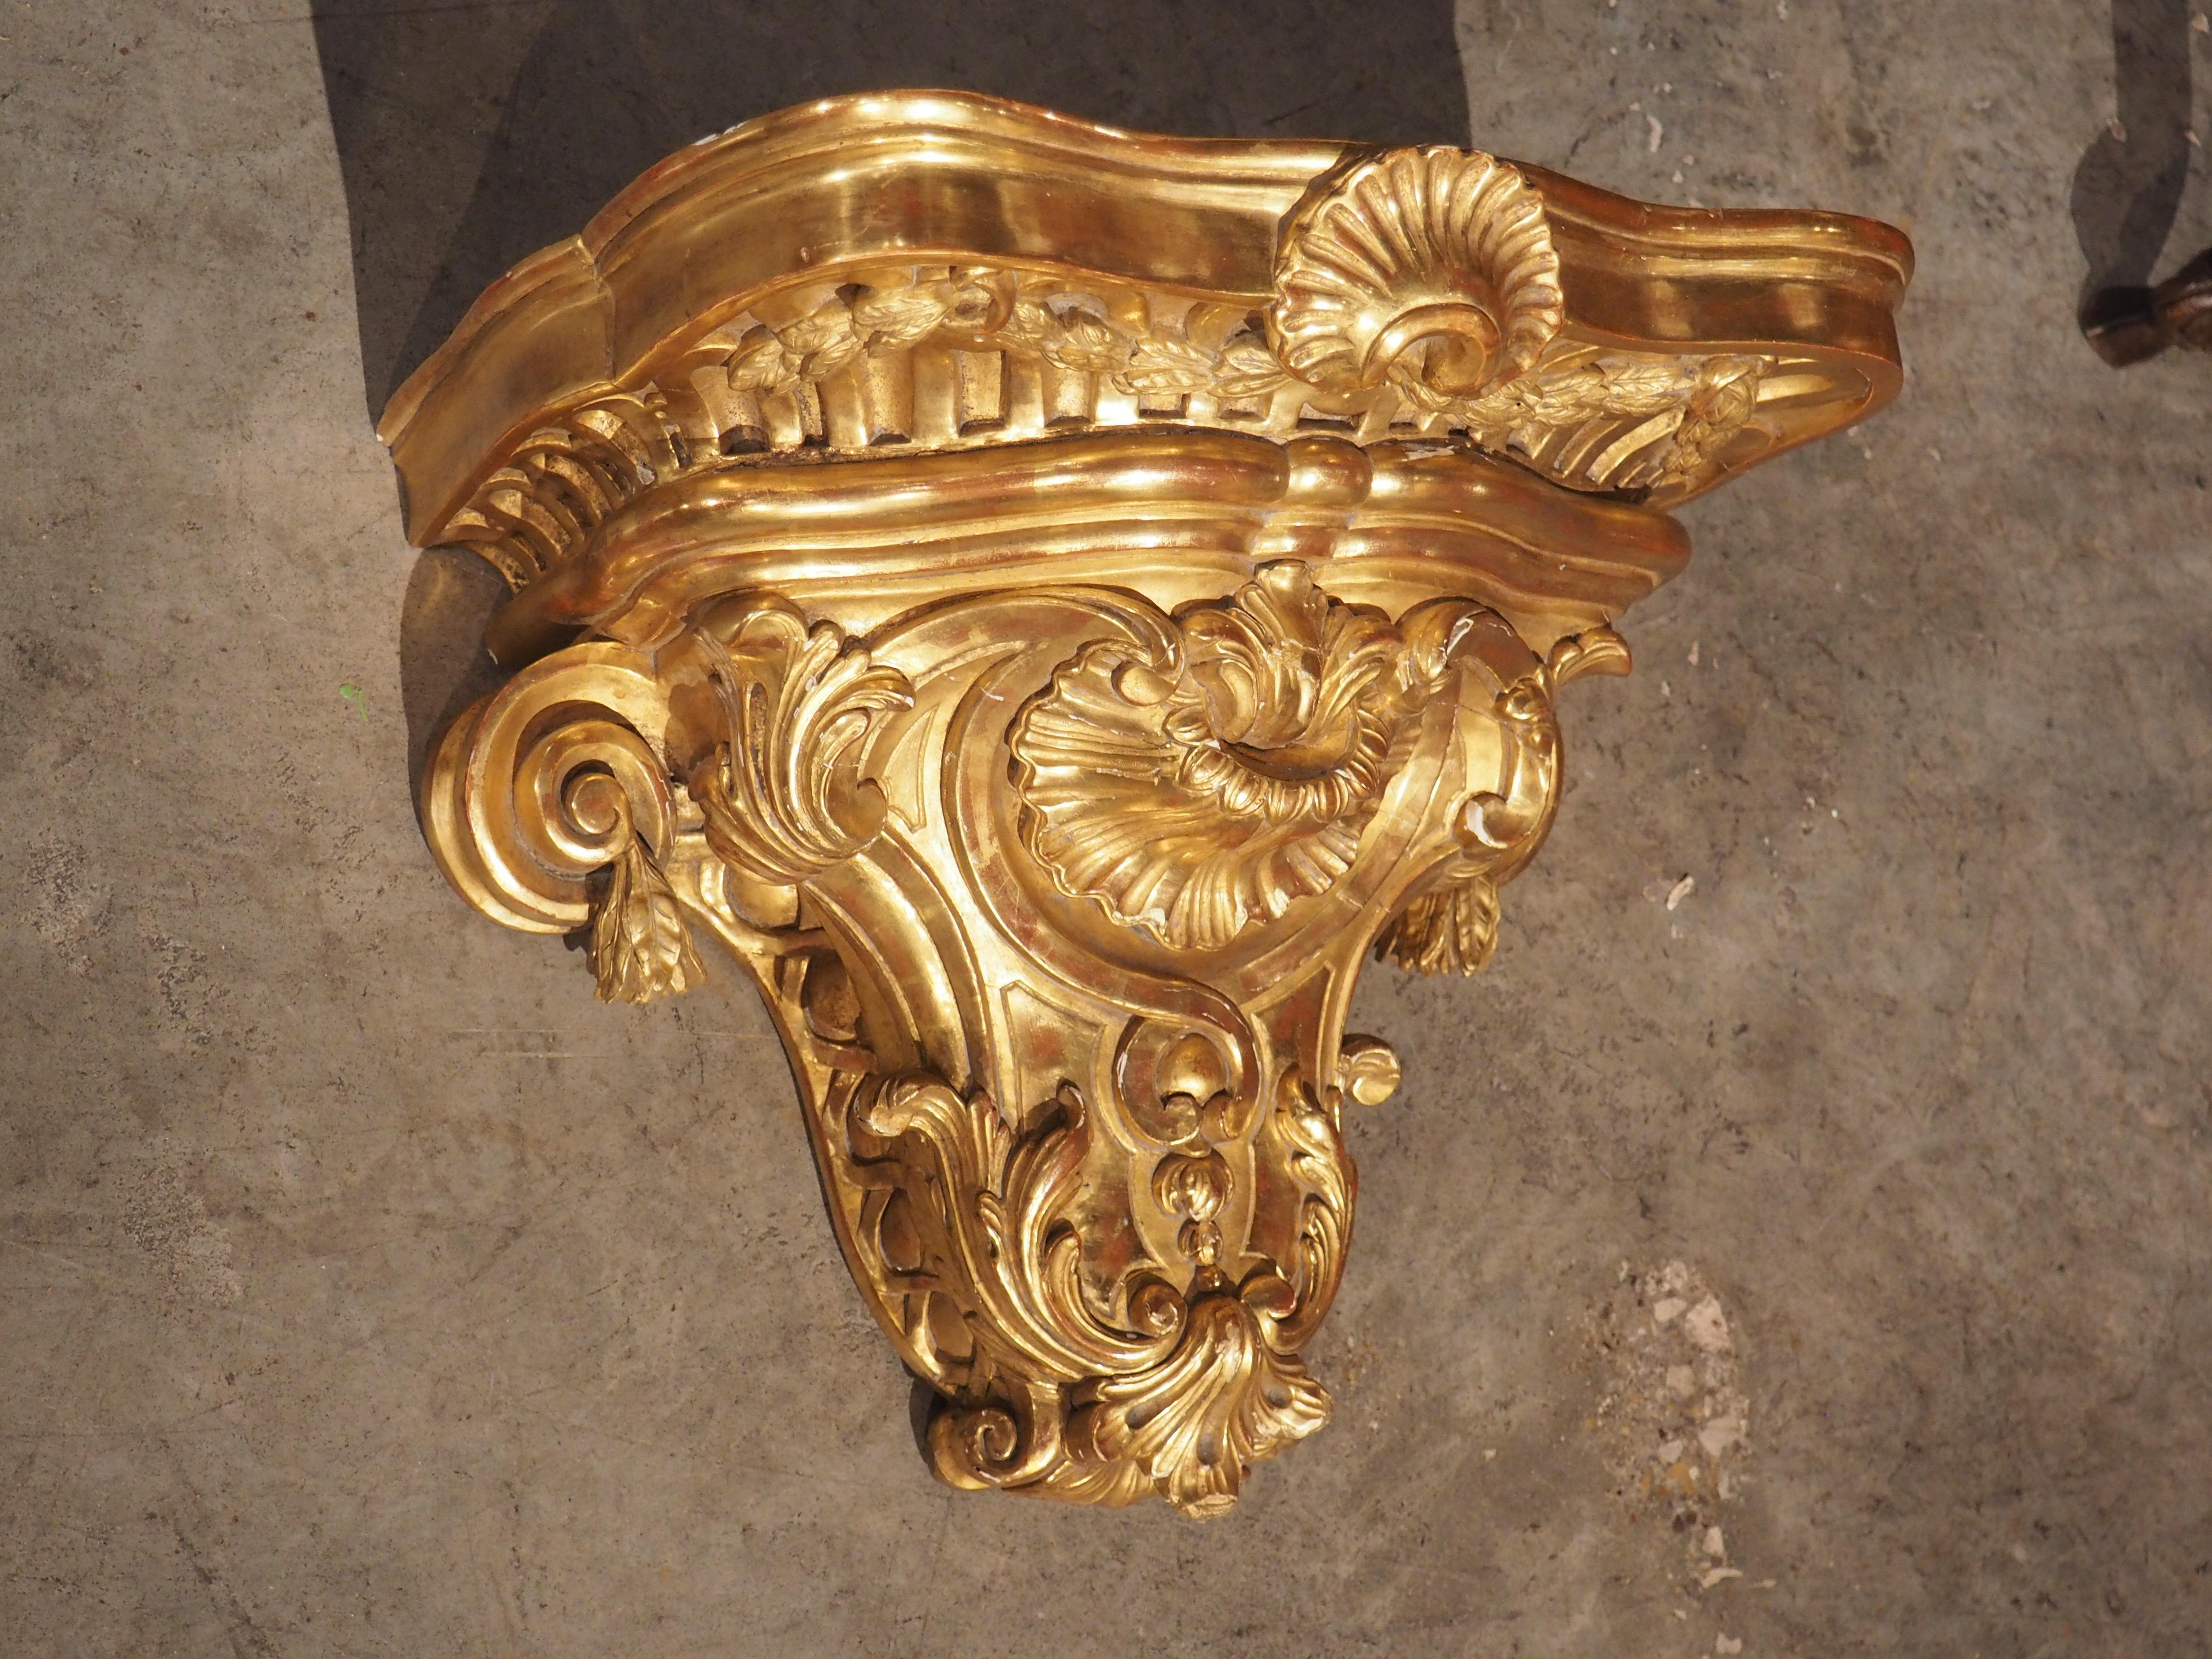 Diese um 1850 in Frankreich handgeschnitzte, elegante Etagere weist von der Natur inspirierte Elemente auf, die als Rocaille-Stil bekannt sind. Das opulente Wandregal aus vergoldetem Holz weist eine reiche und lebendige Patina auf, mit